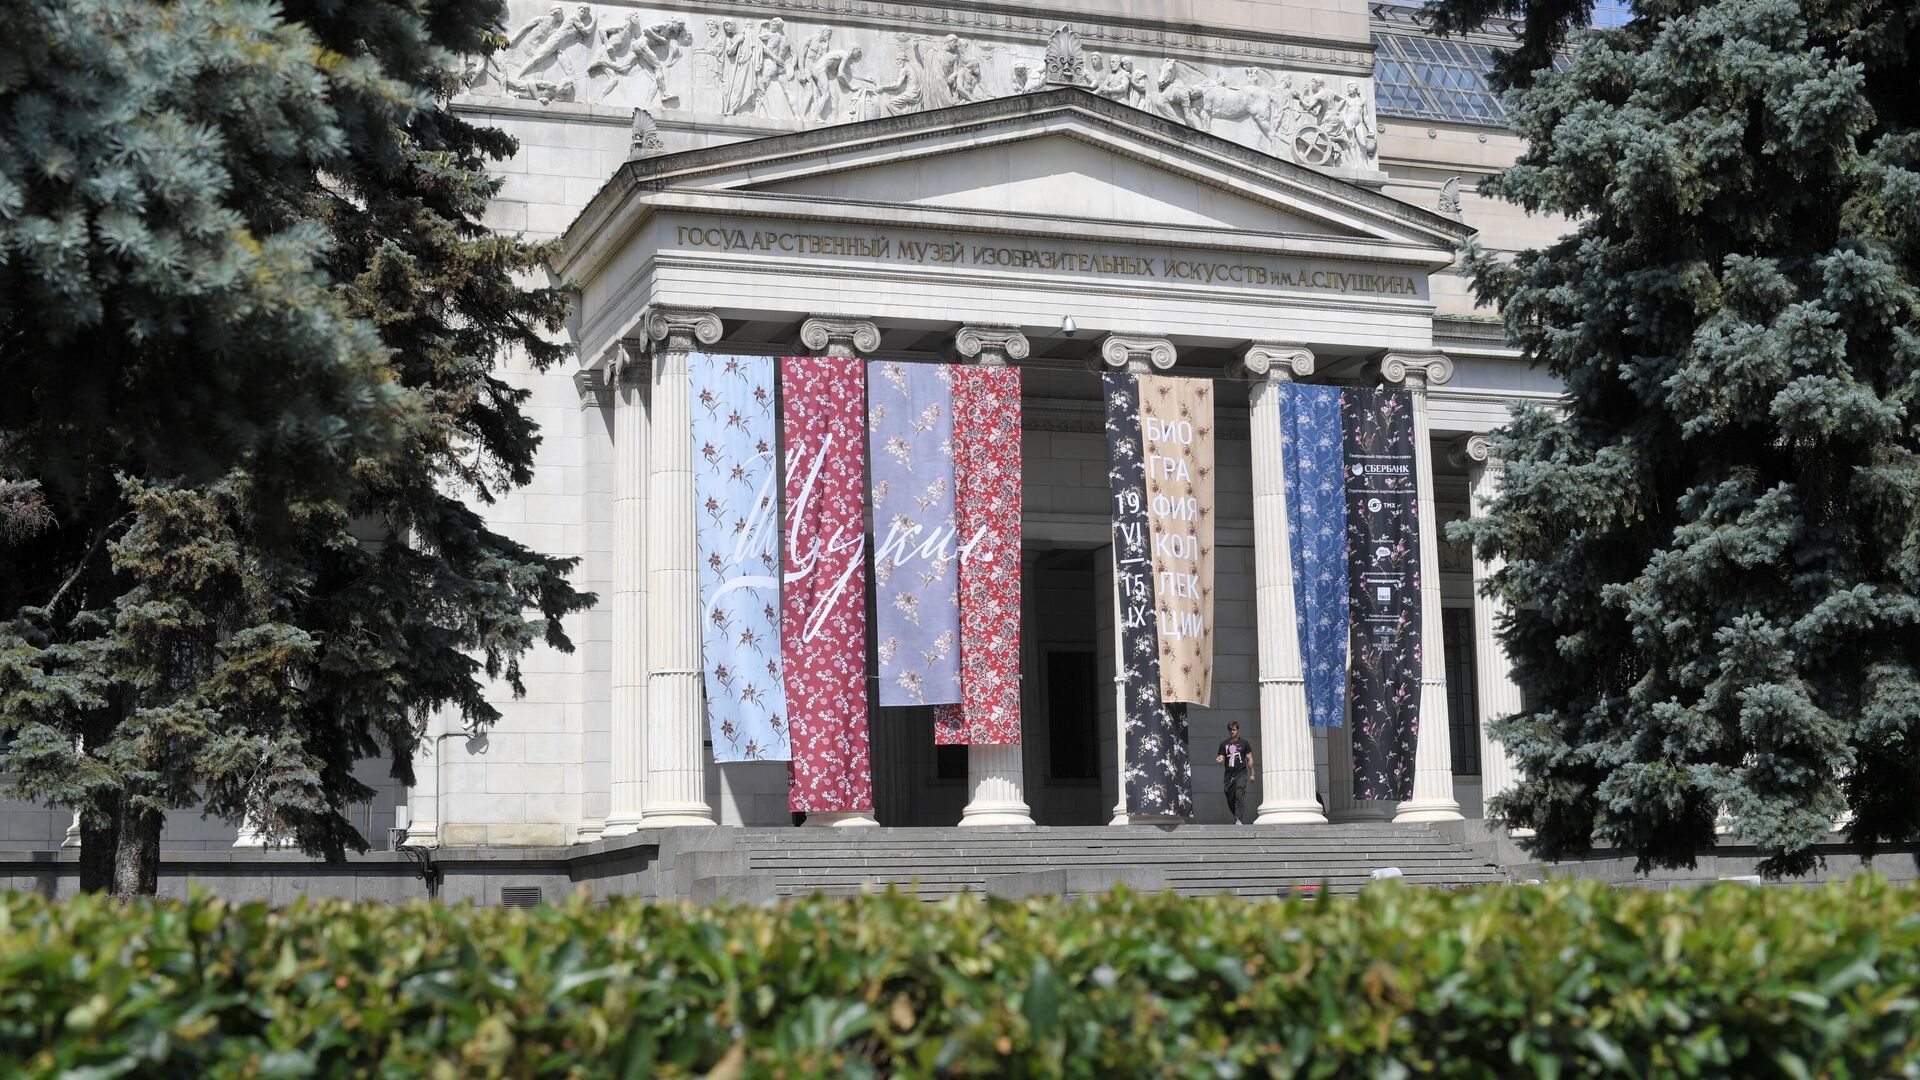 Фасад главного здания Государственного музея изобразительных изобразительных искусств (ГМИИ) имени А.С. Пушкина - РИА Новости, 1920, 27.06.2020